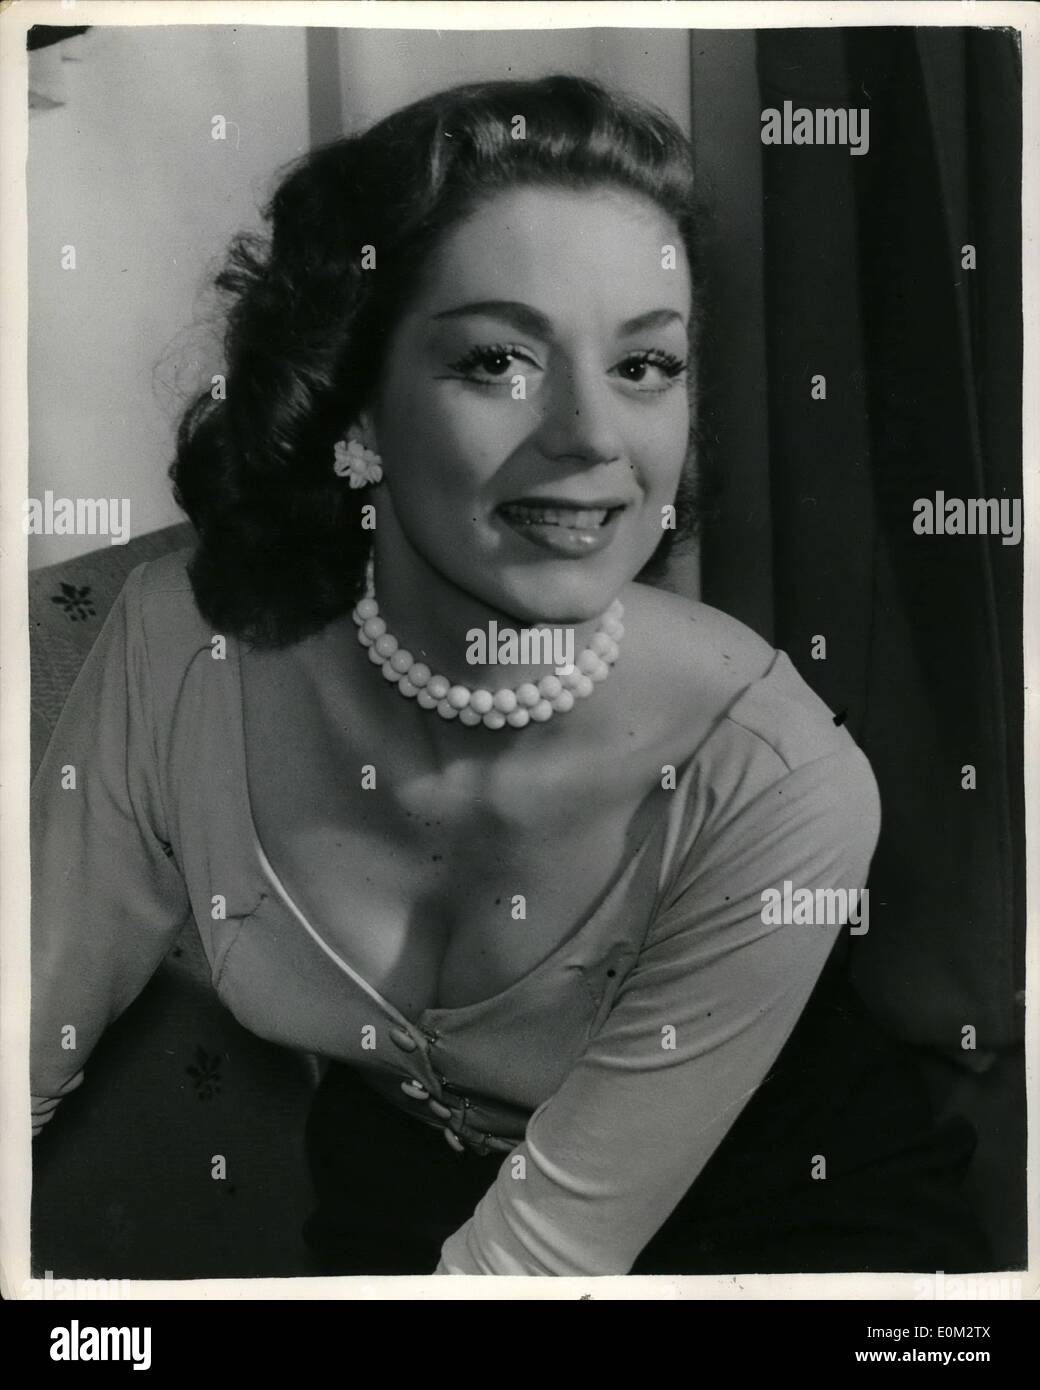 15 maggio 1953 - 15-5-53 Apertura dei sette anni di prurito . Keystone Foto Mostra: Jill Melford, di anni 21, che è una delle stelle di sette anni di prurito che ha aperto al Teatro Aldwych la scorsa notte visto dopo lo spettacolo. Foto Stock